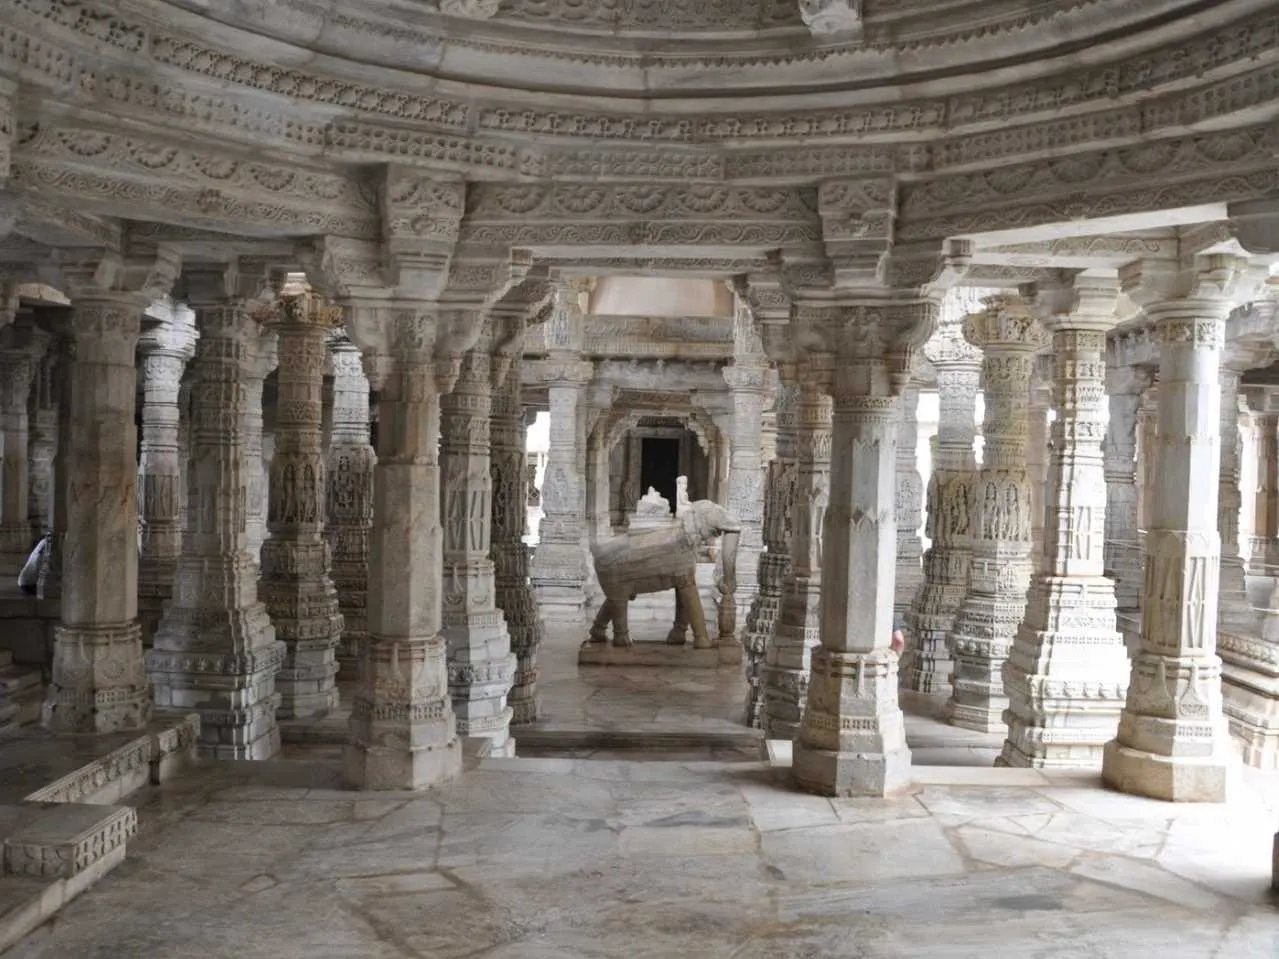 pillar of jain temple